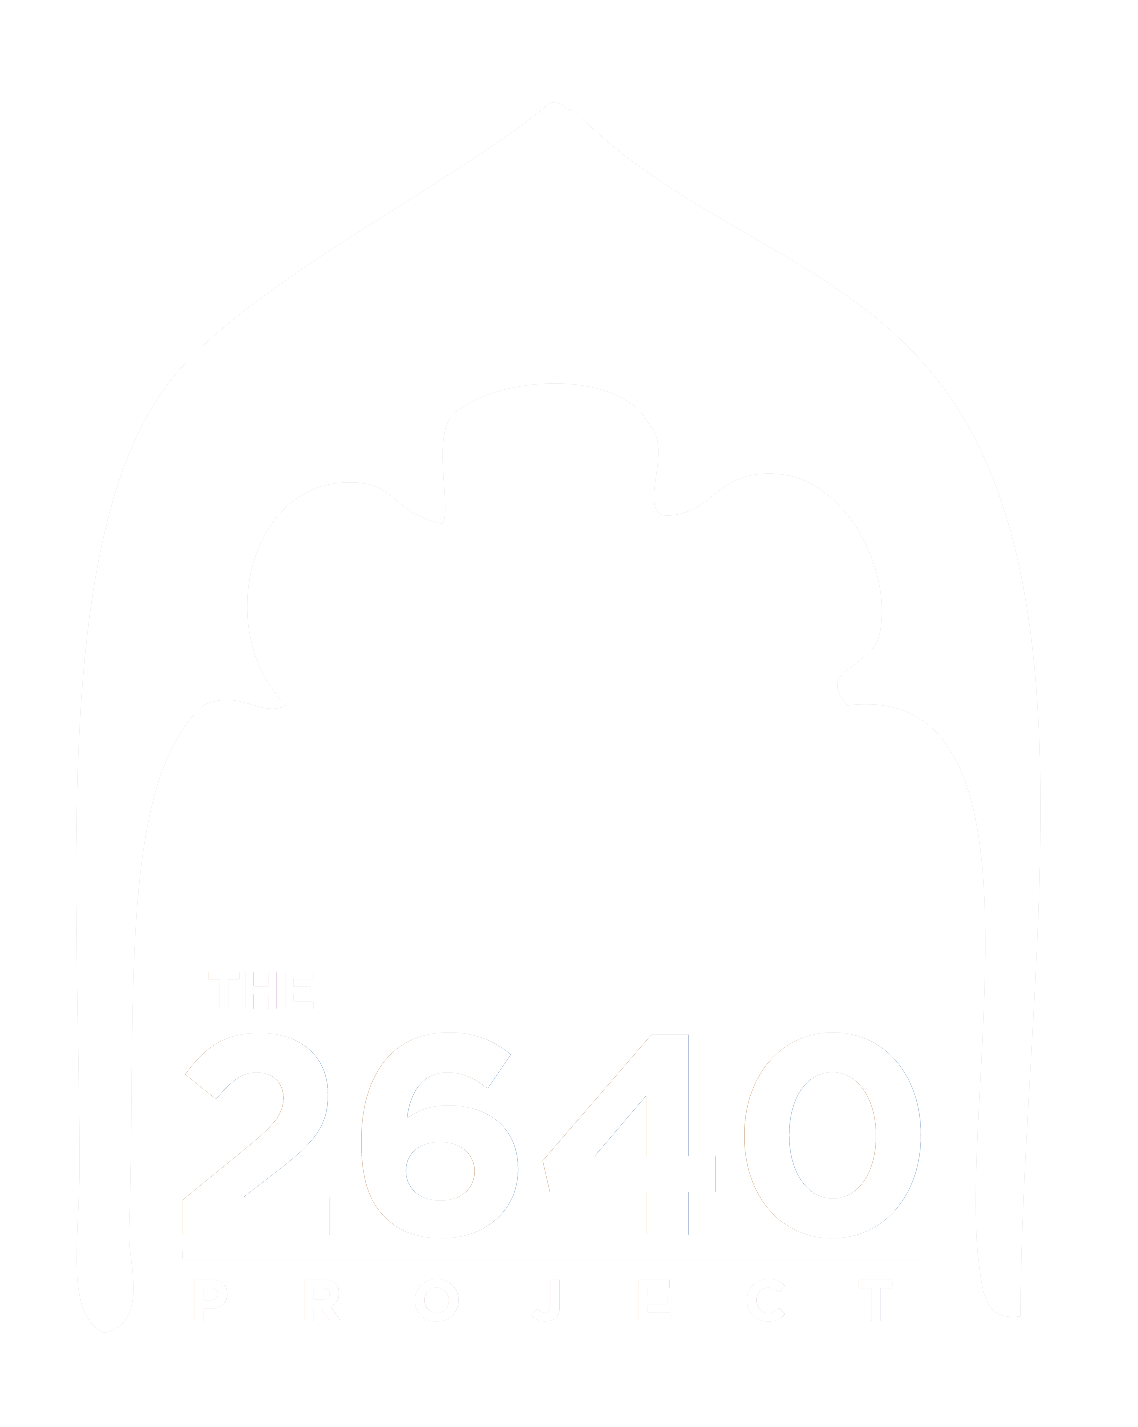 2640